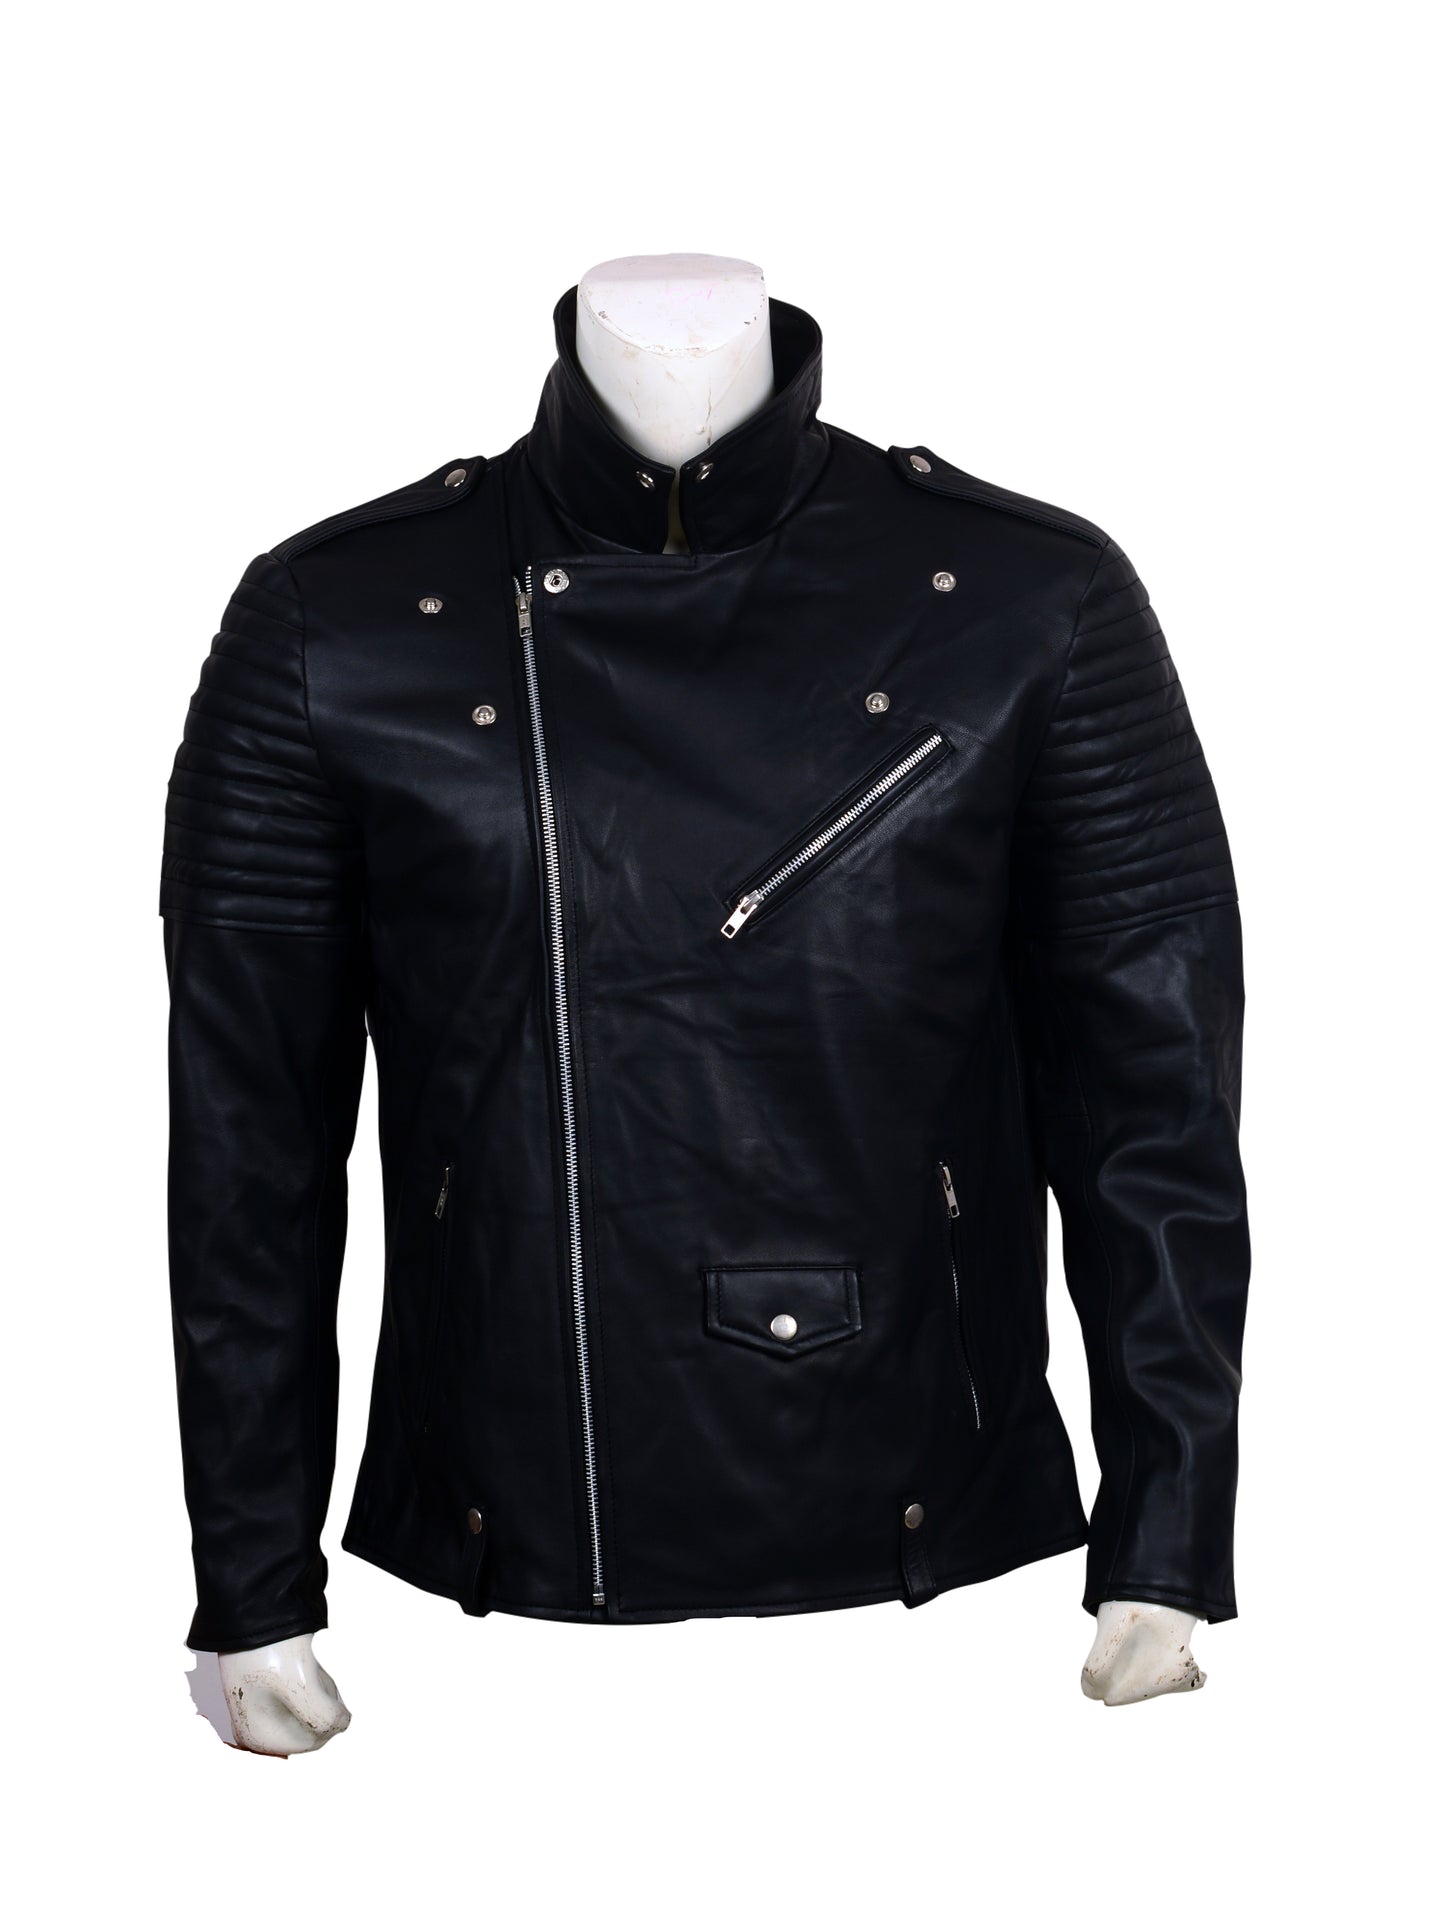 Skull Embroidered Black Leather Biker Jacket